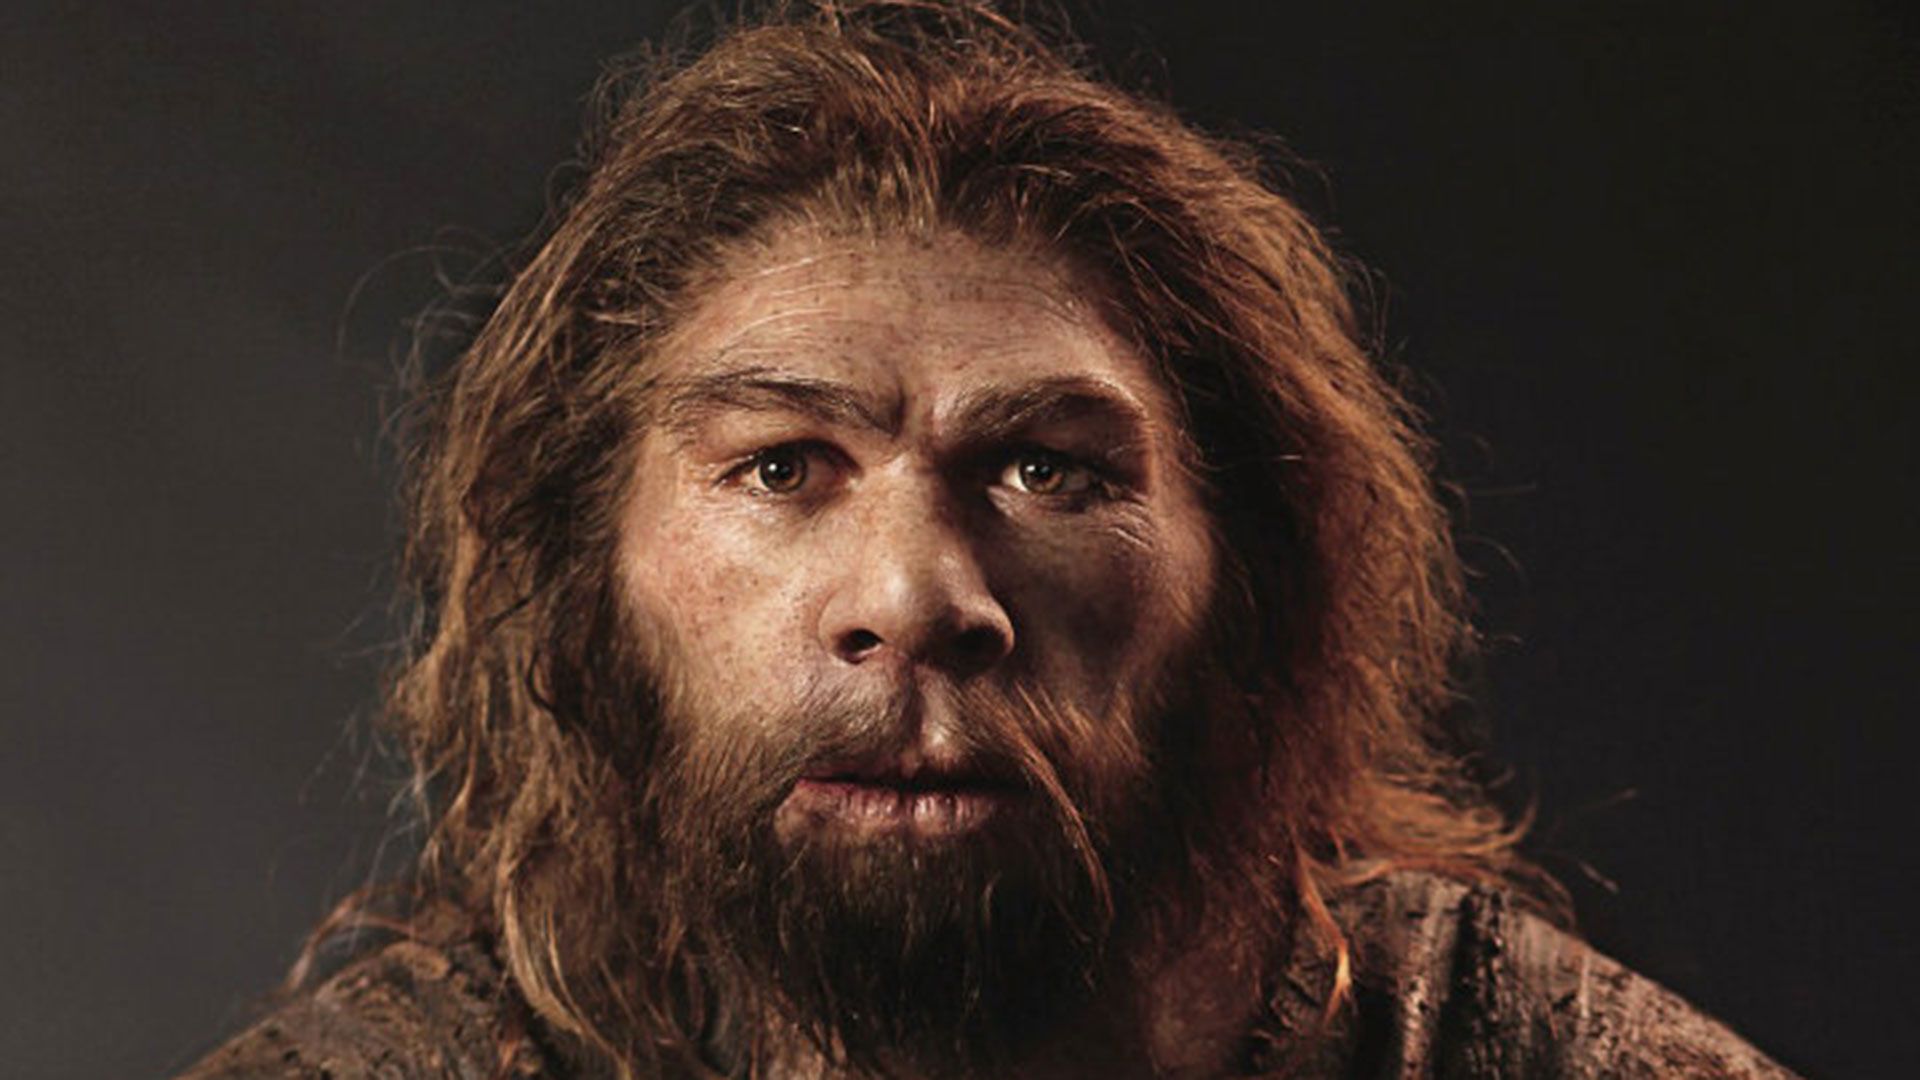 La migración constante del homo sapiens desde África selló el destino del hombre de Neandertal